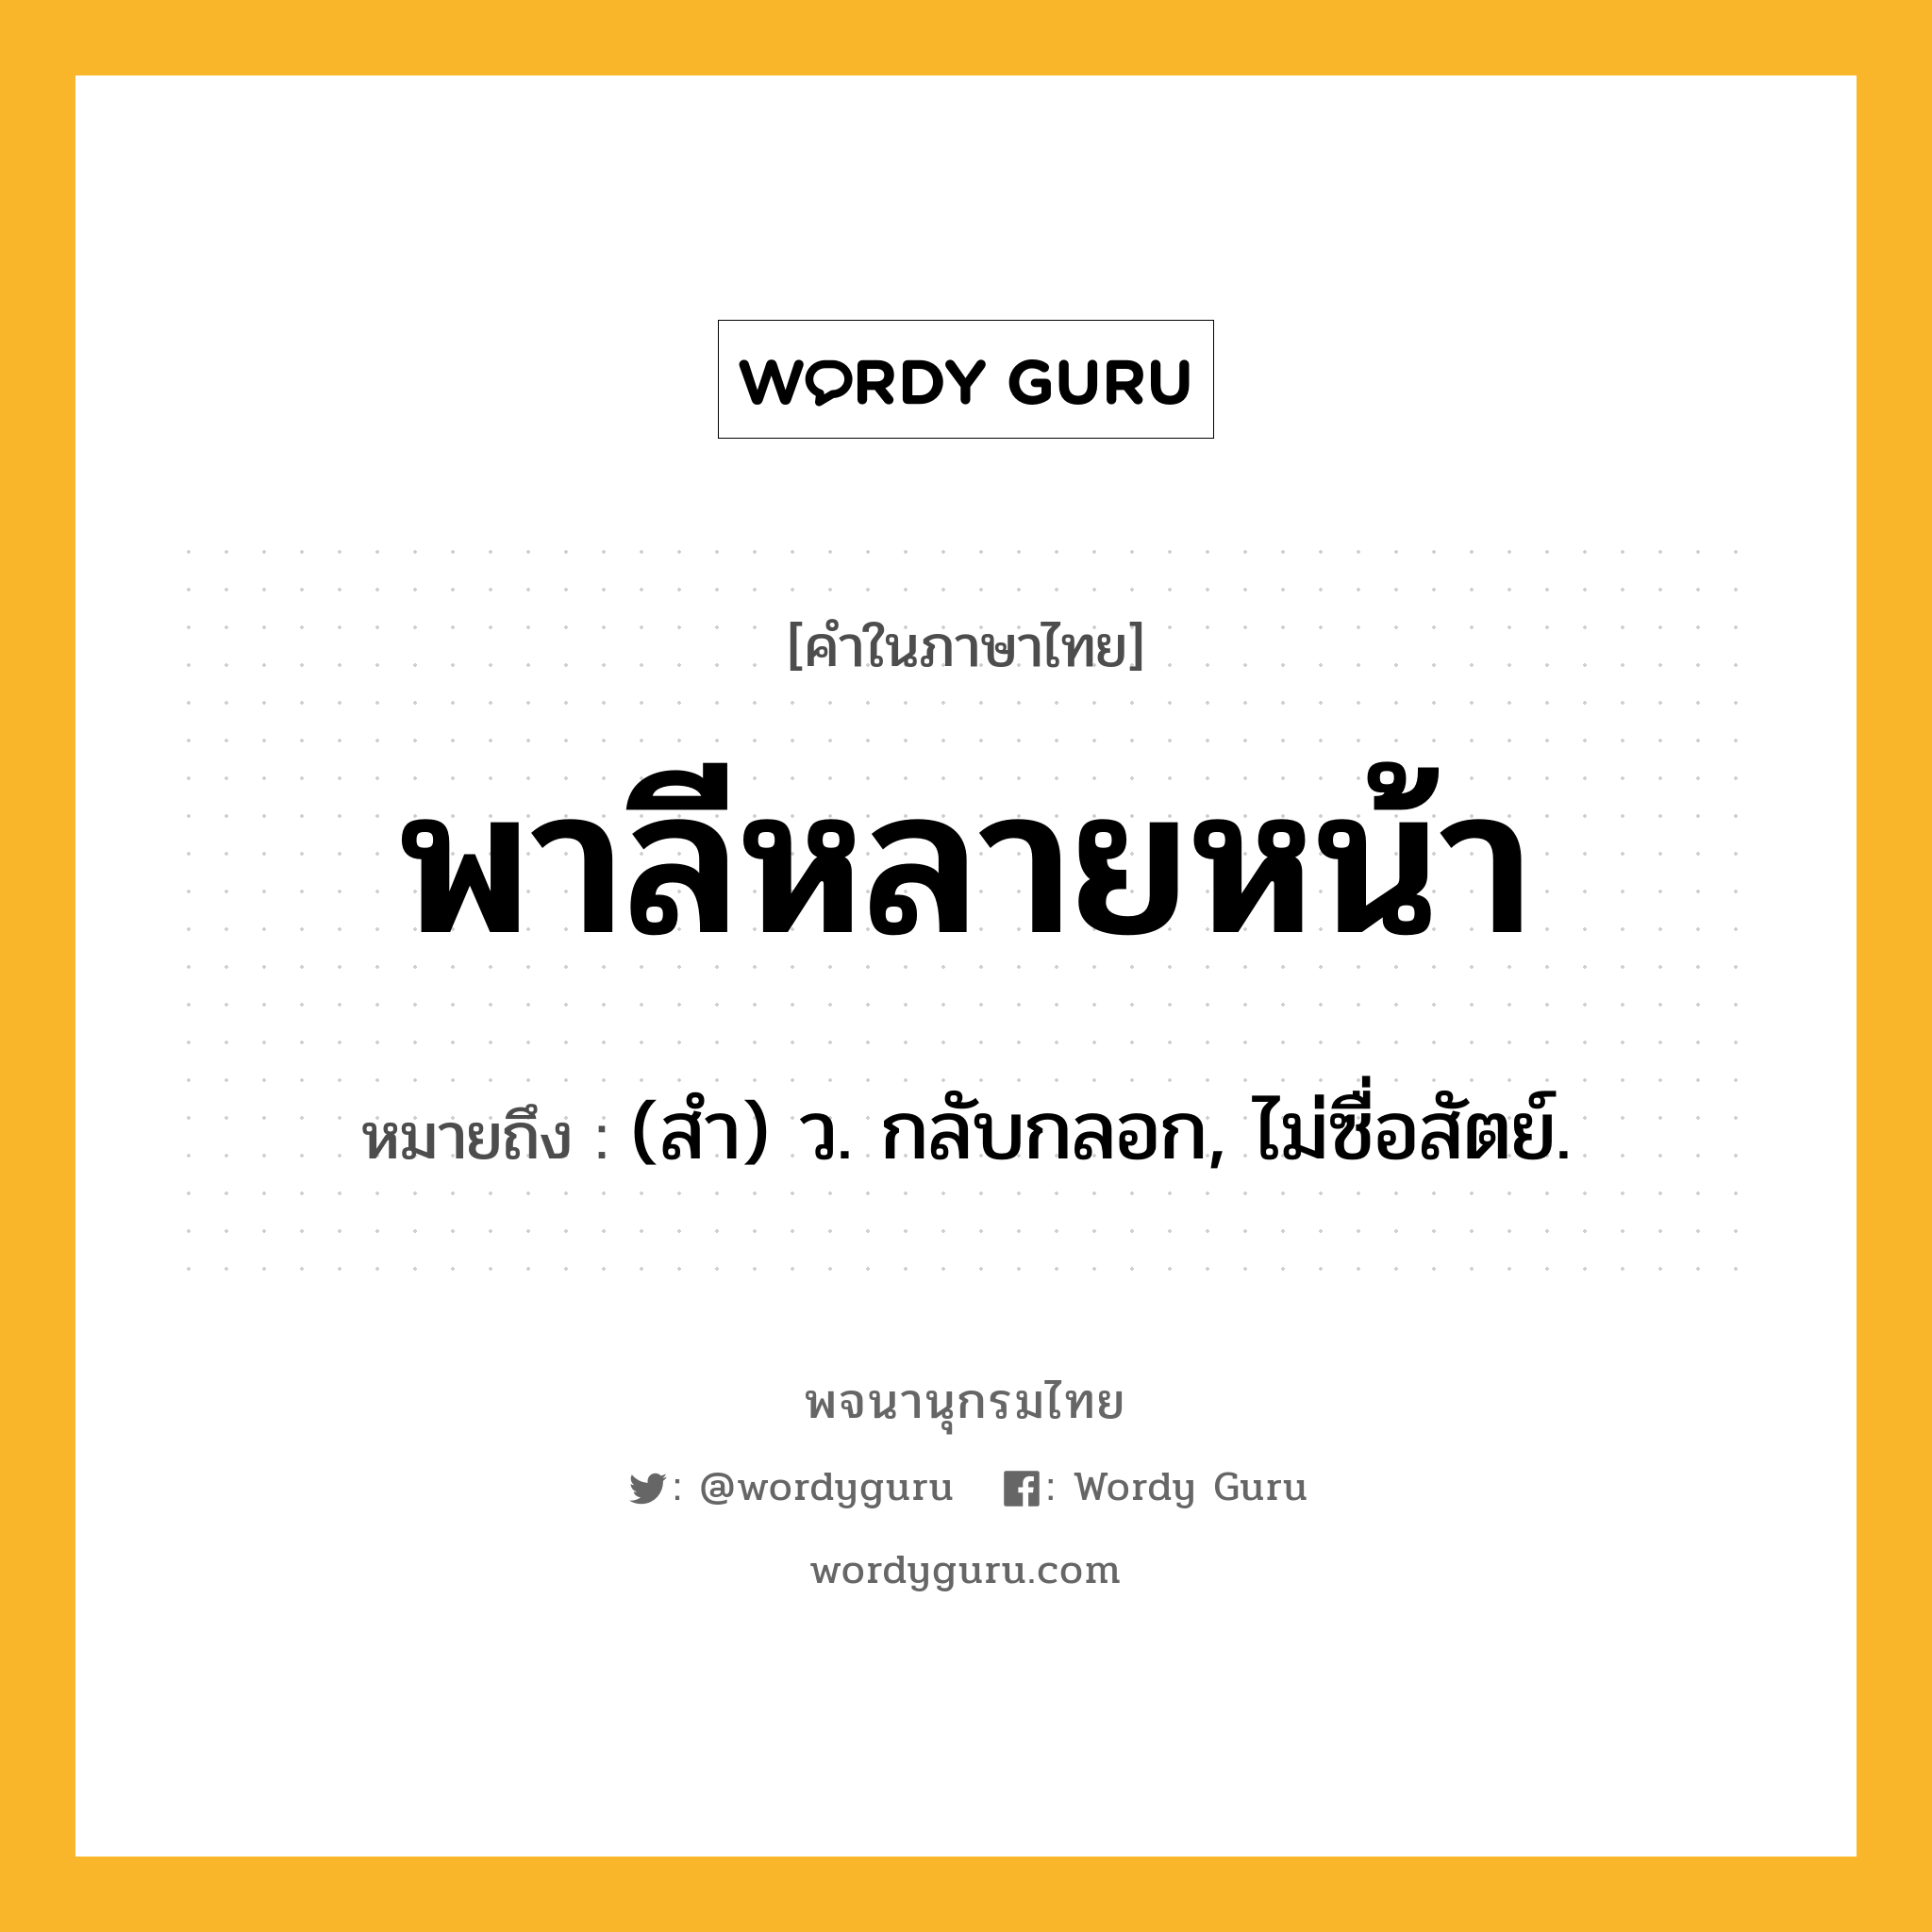 พาลีหลายหน้า หมายถึงอะไร?, คำในภาษาไทย พาลีหลายหน้า หมายถึง (สํา) ว. กลับกลอก, ไม่ซื่อสัตย์.